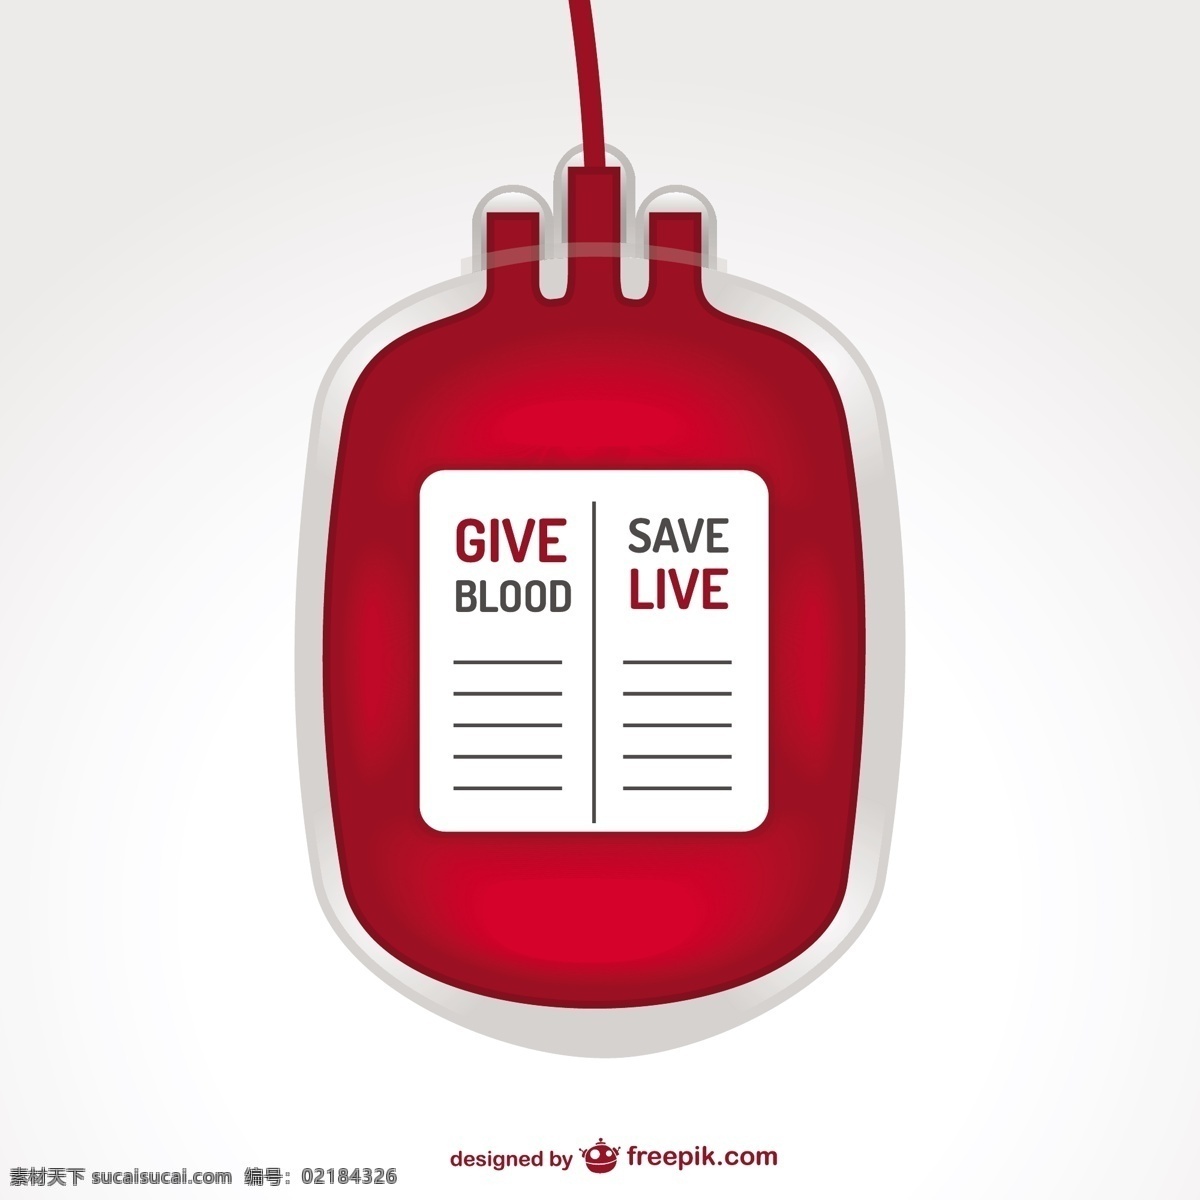 输血袋插图 海报 心脏 医疗 模板 健康 红色 袋子 血 下降 插图 海报模板 捐赠 水平 液滴 纯 白色